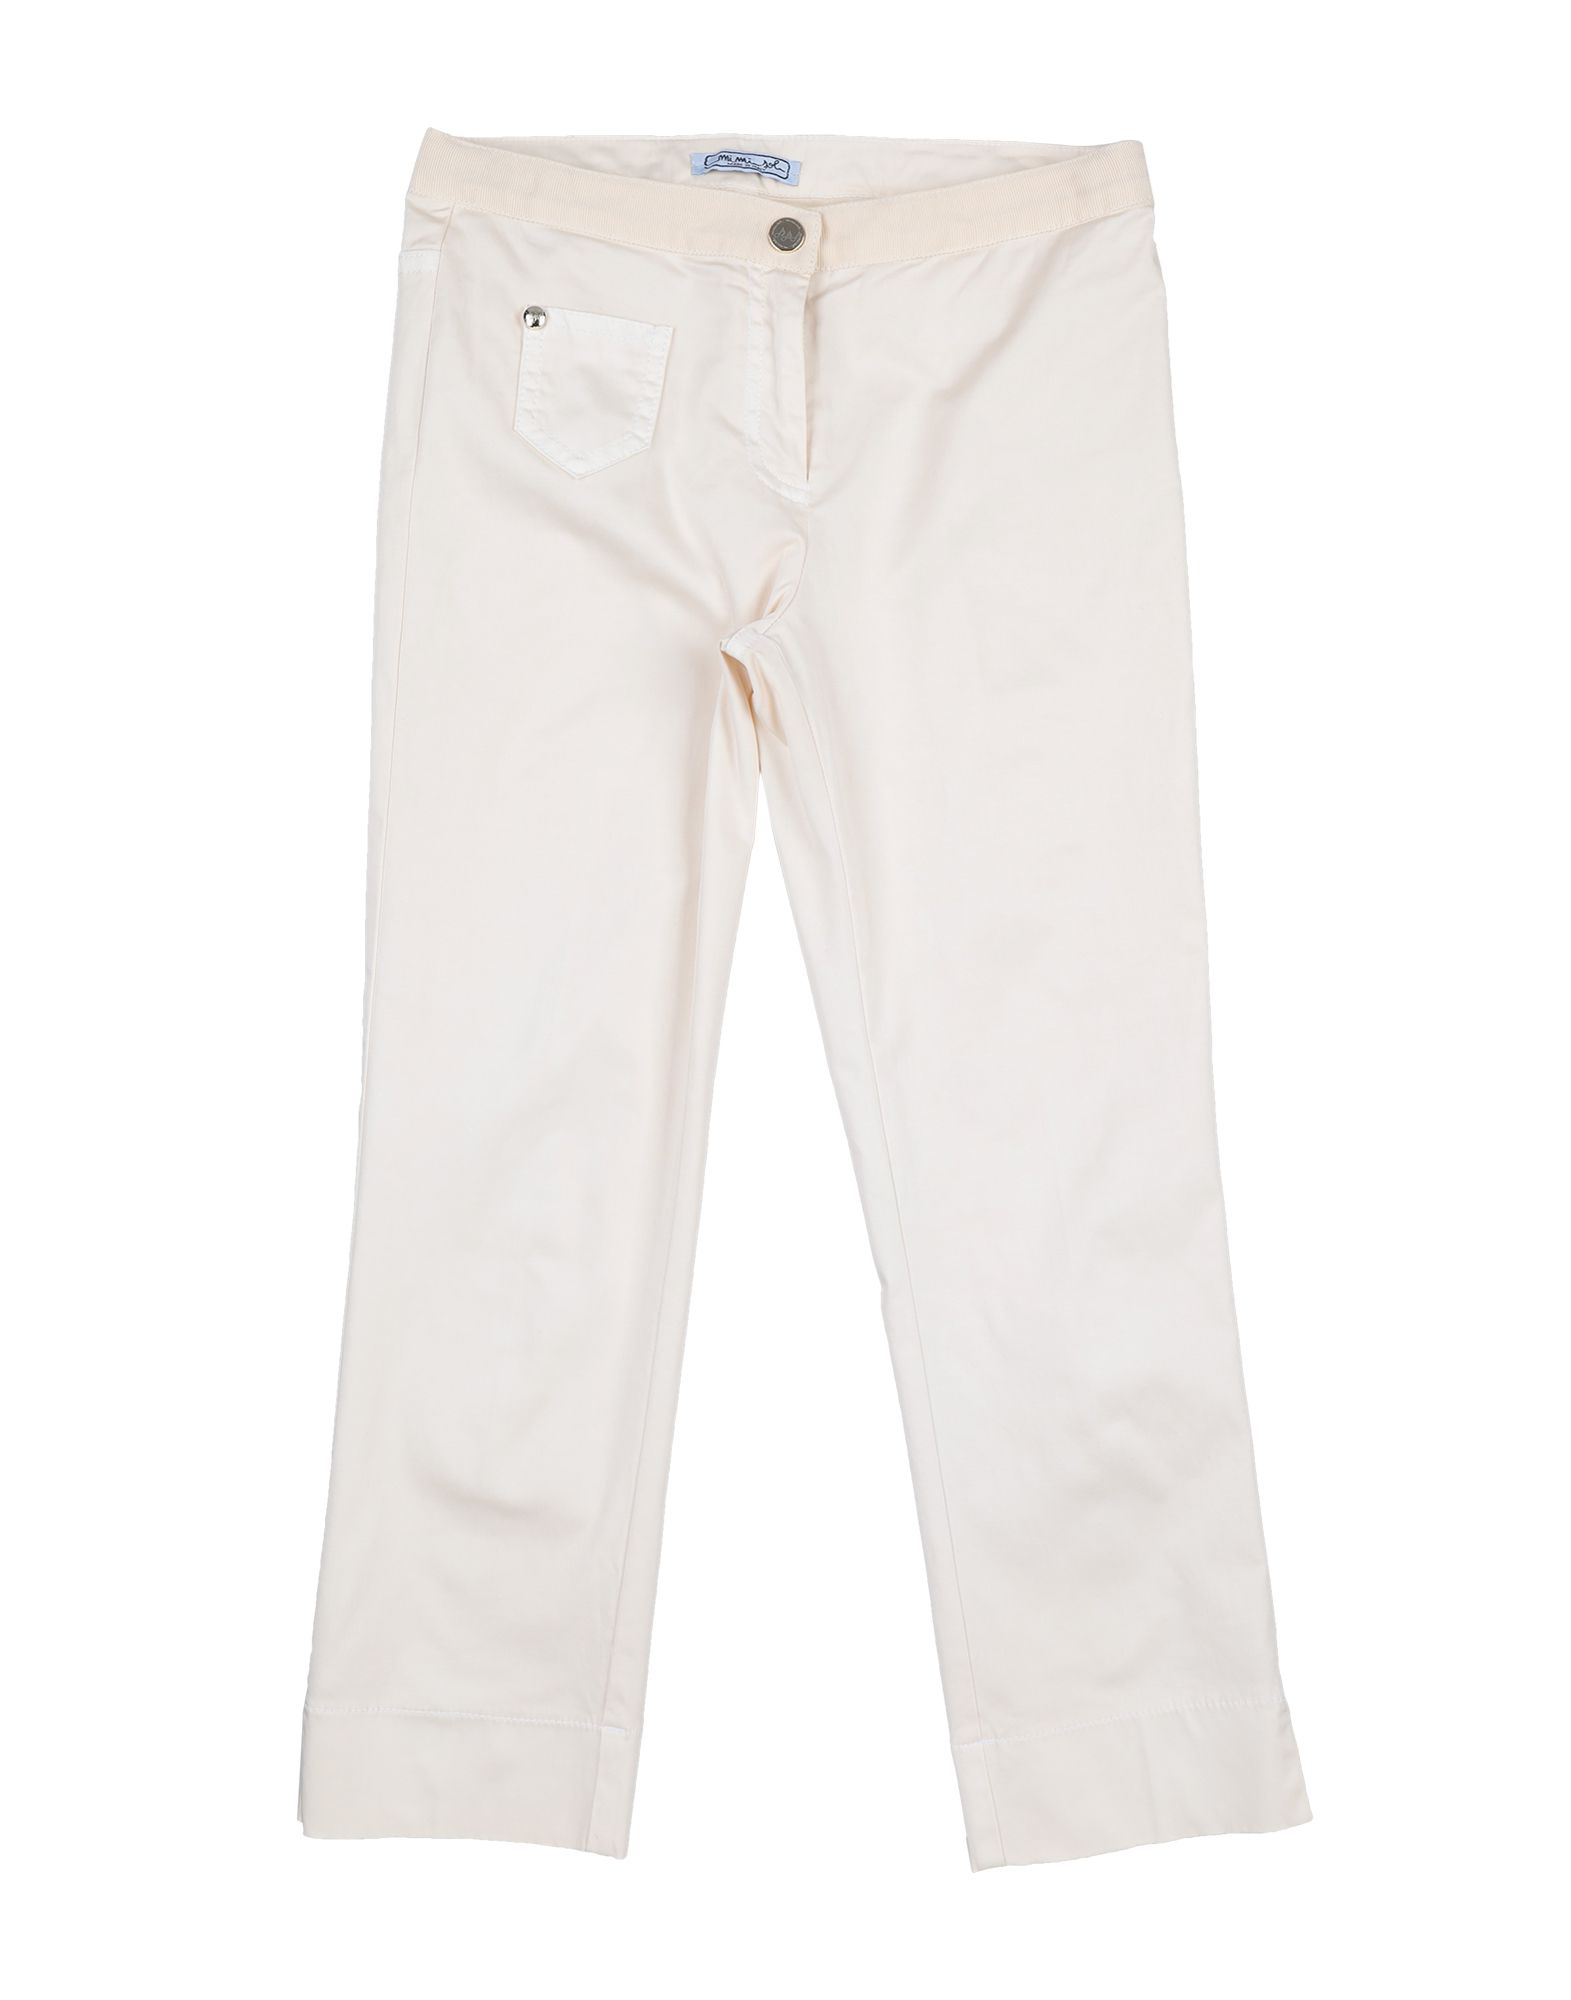 Повседневные брюки  - Бежевый,Белый цвет